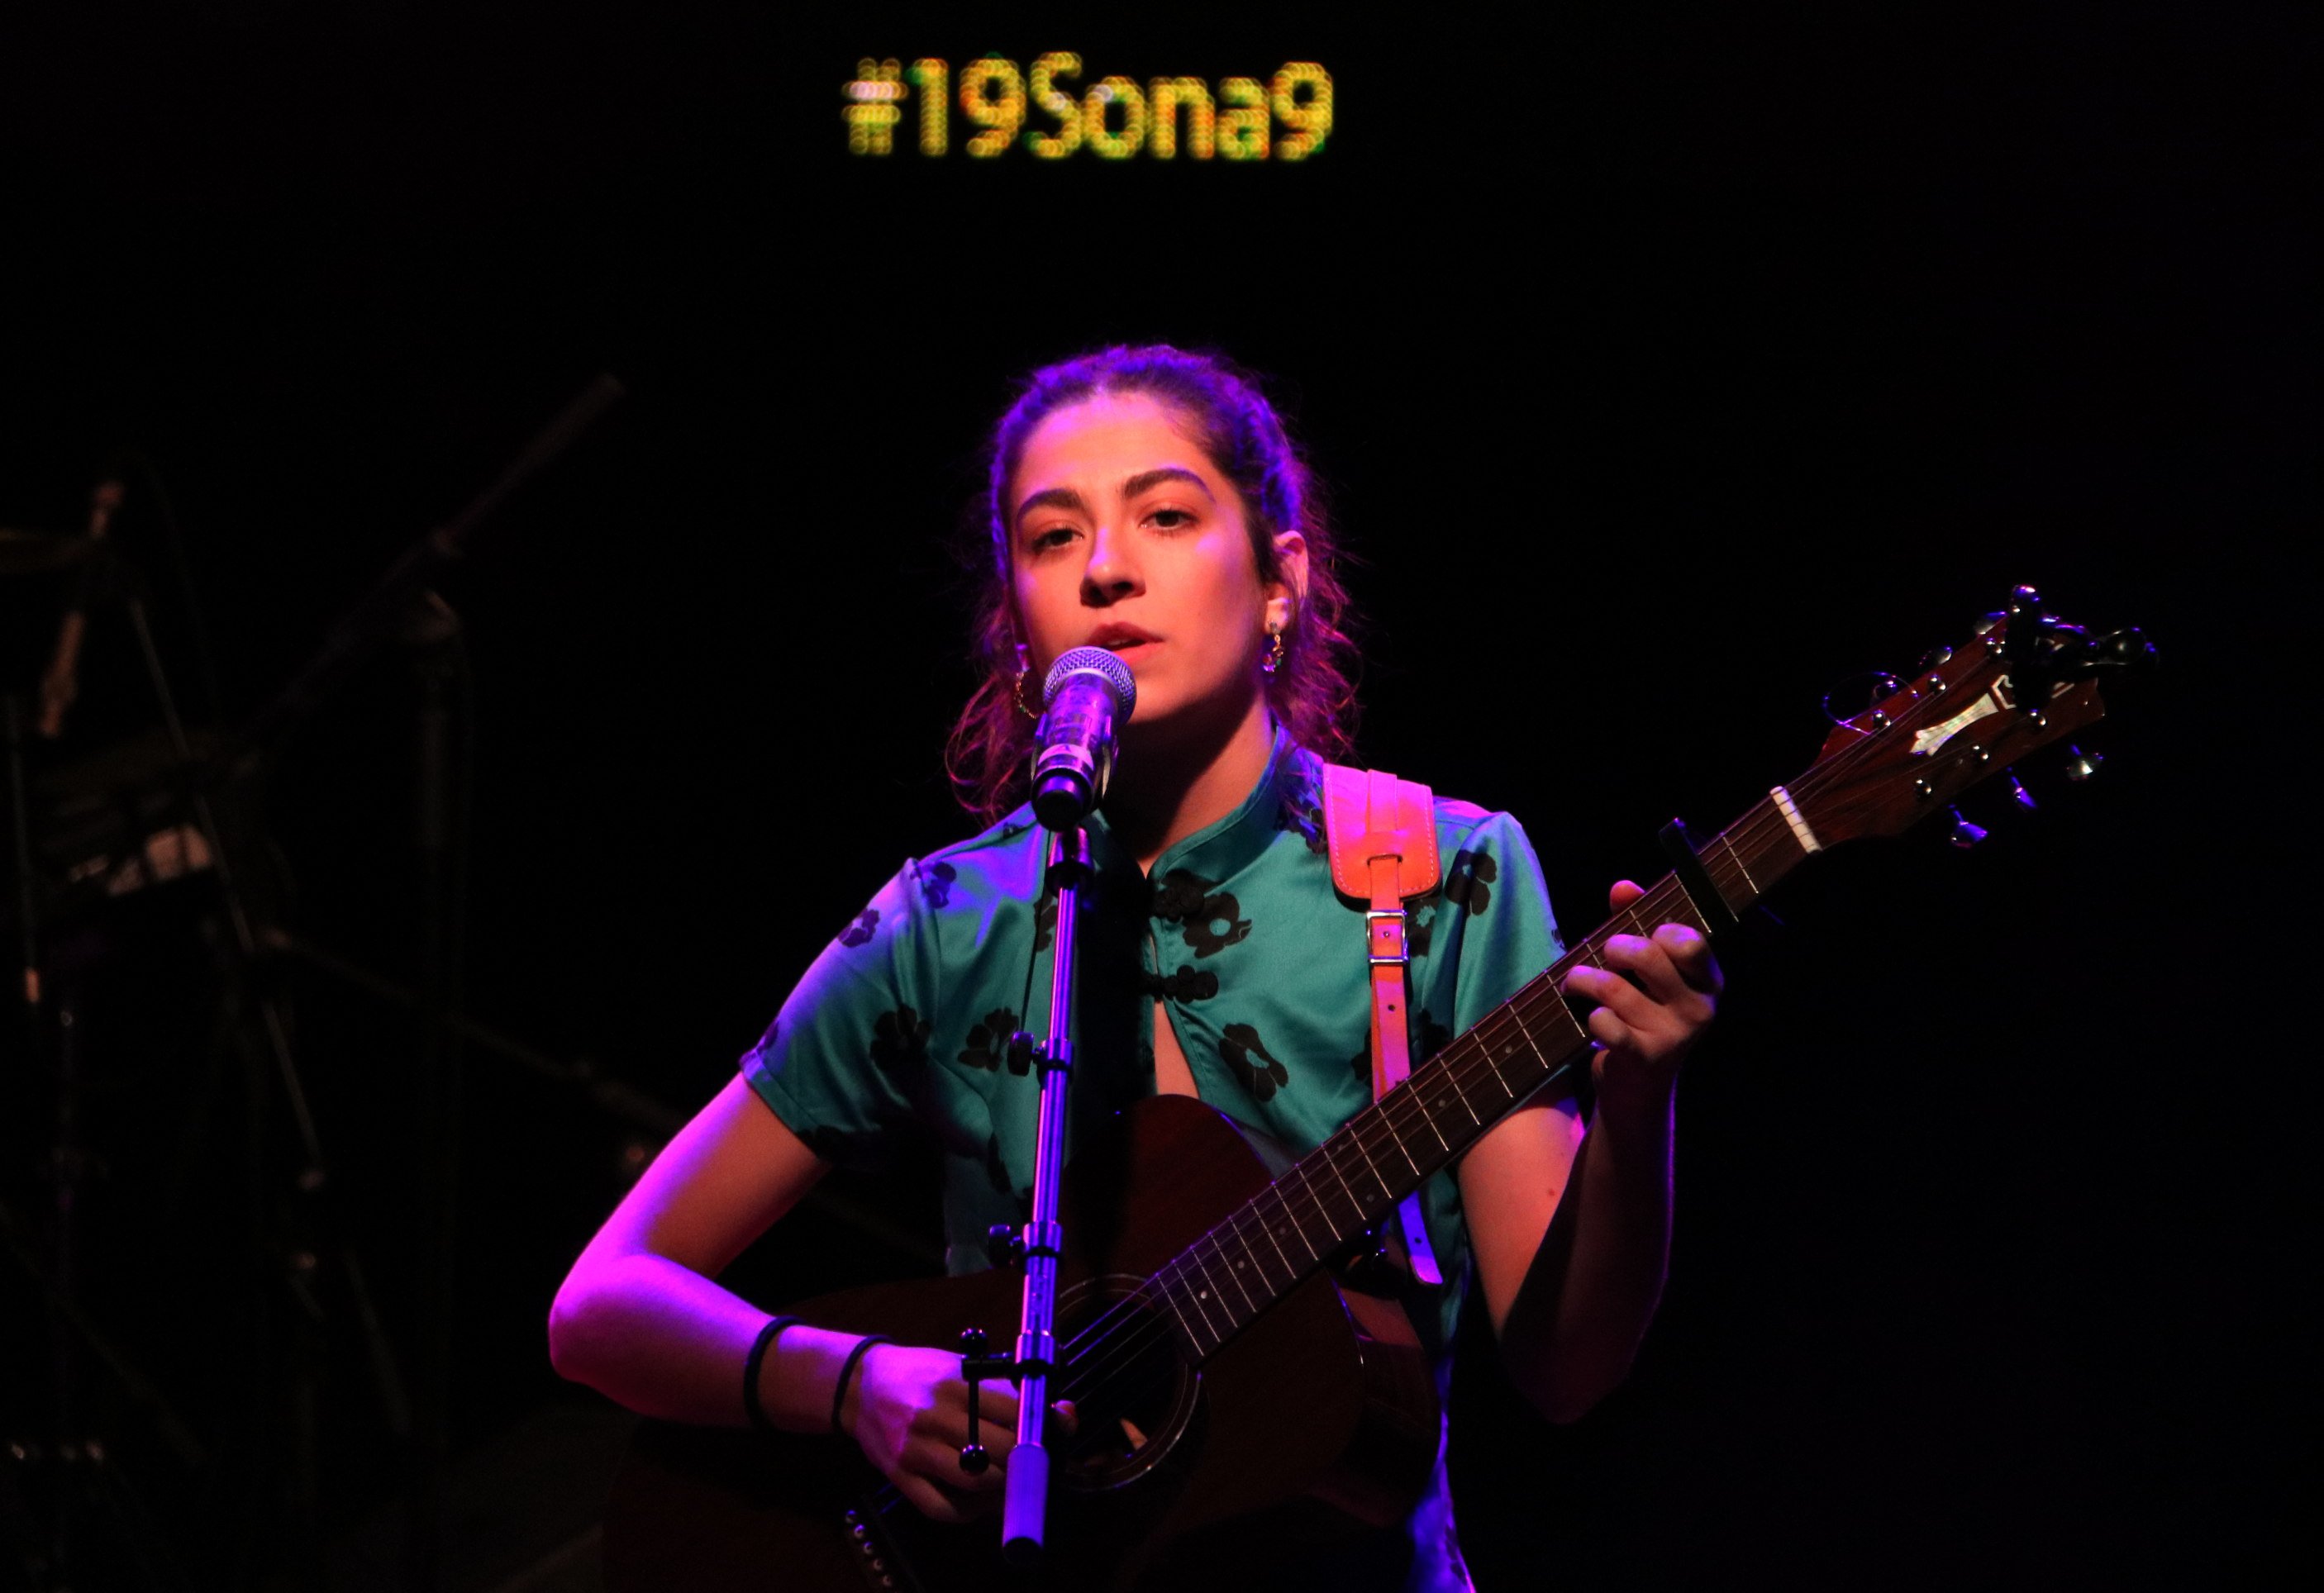 Maria Jaume Martorell guanya el concurs Sona 9 2019